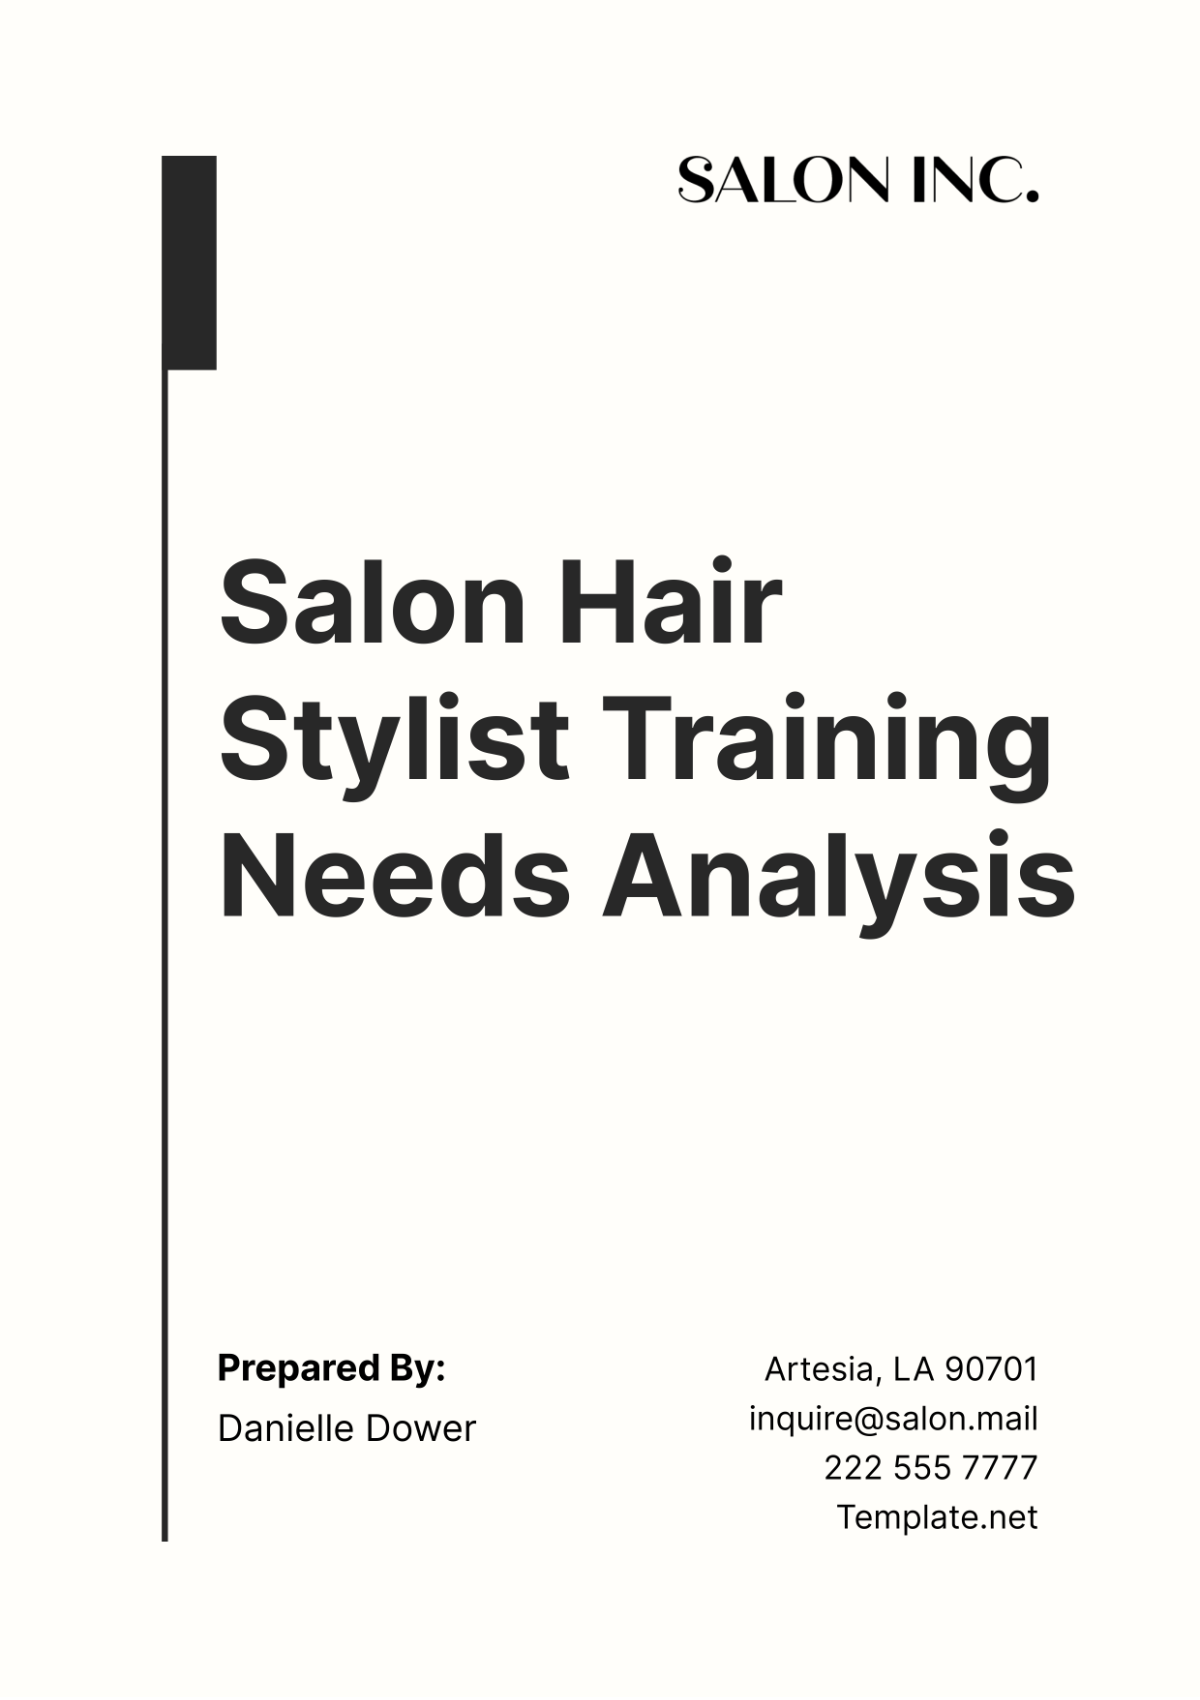 Salon Hair Stylist Training Needs Analysis Template